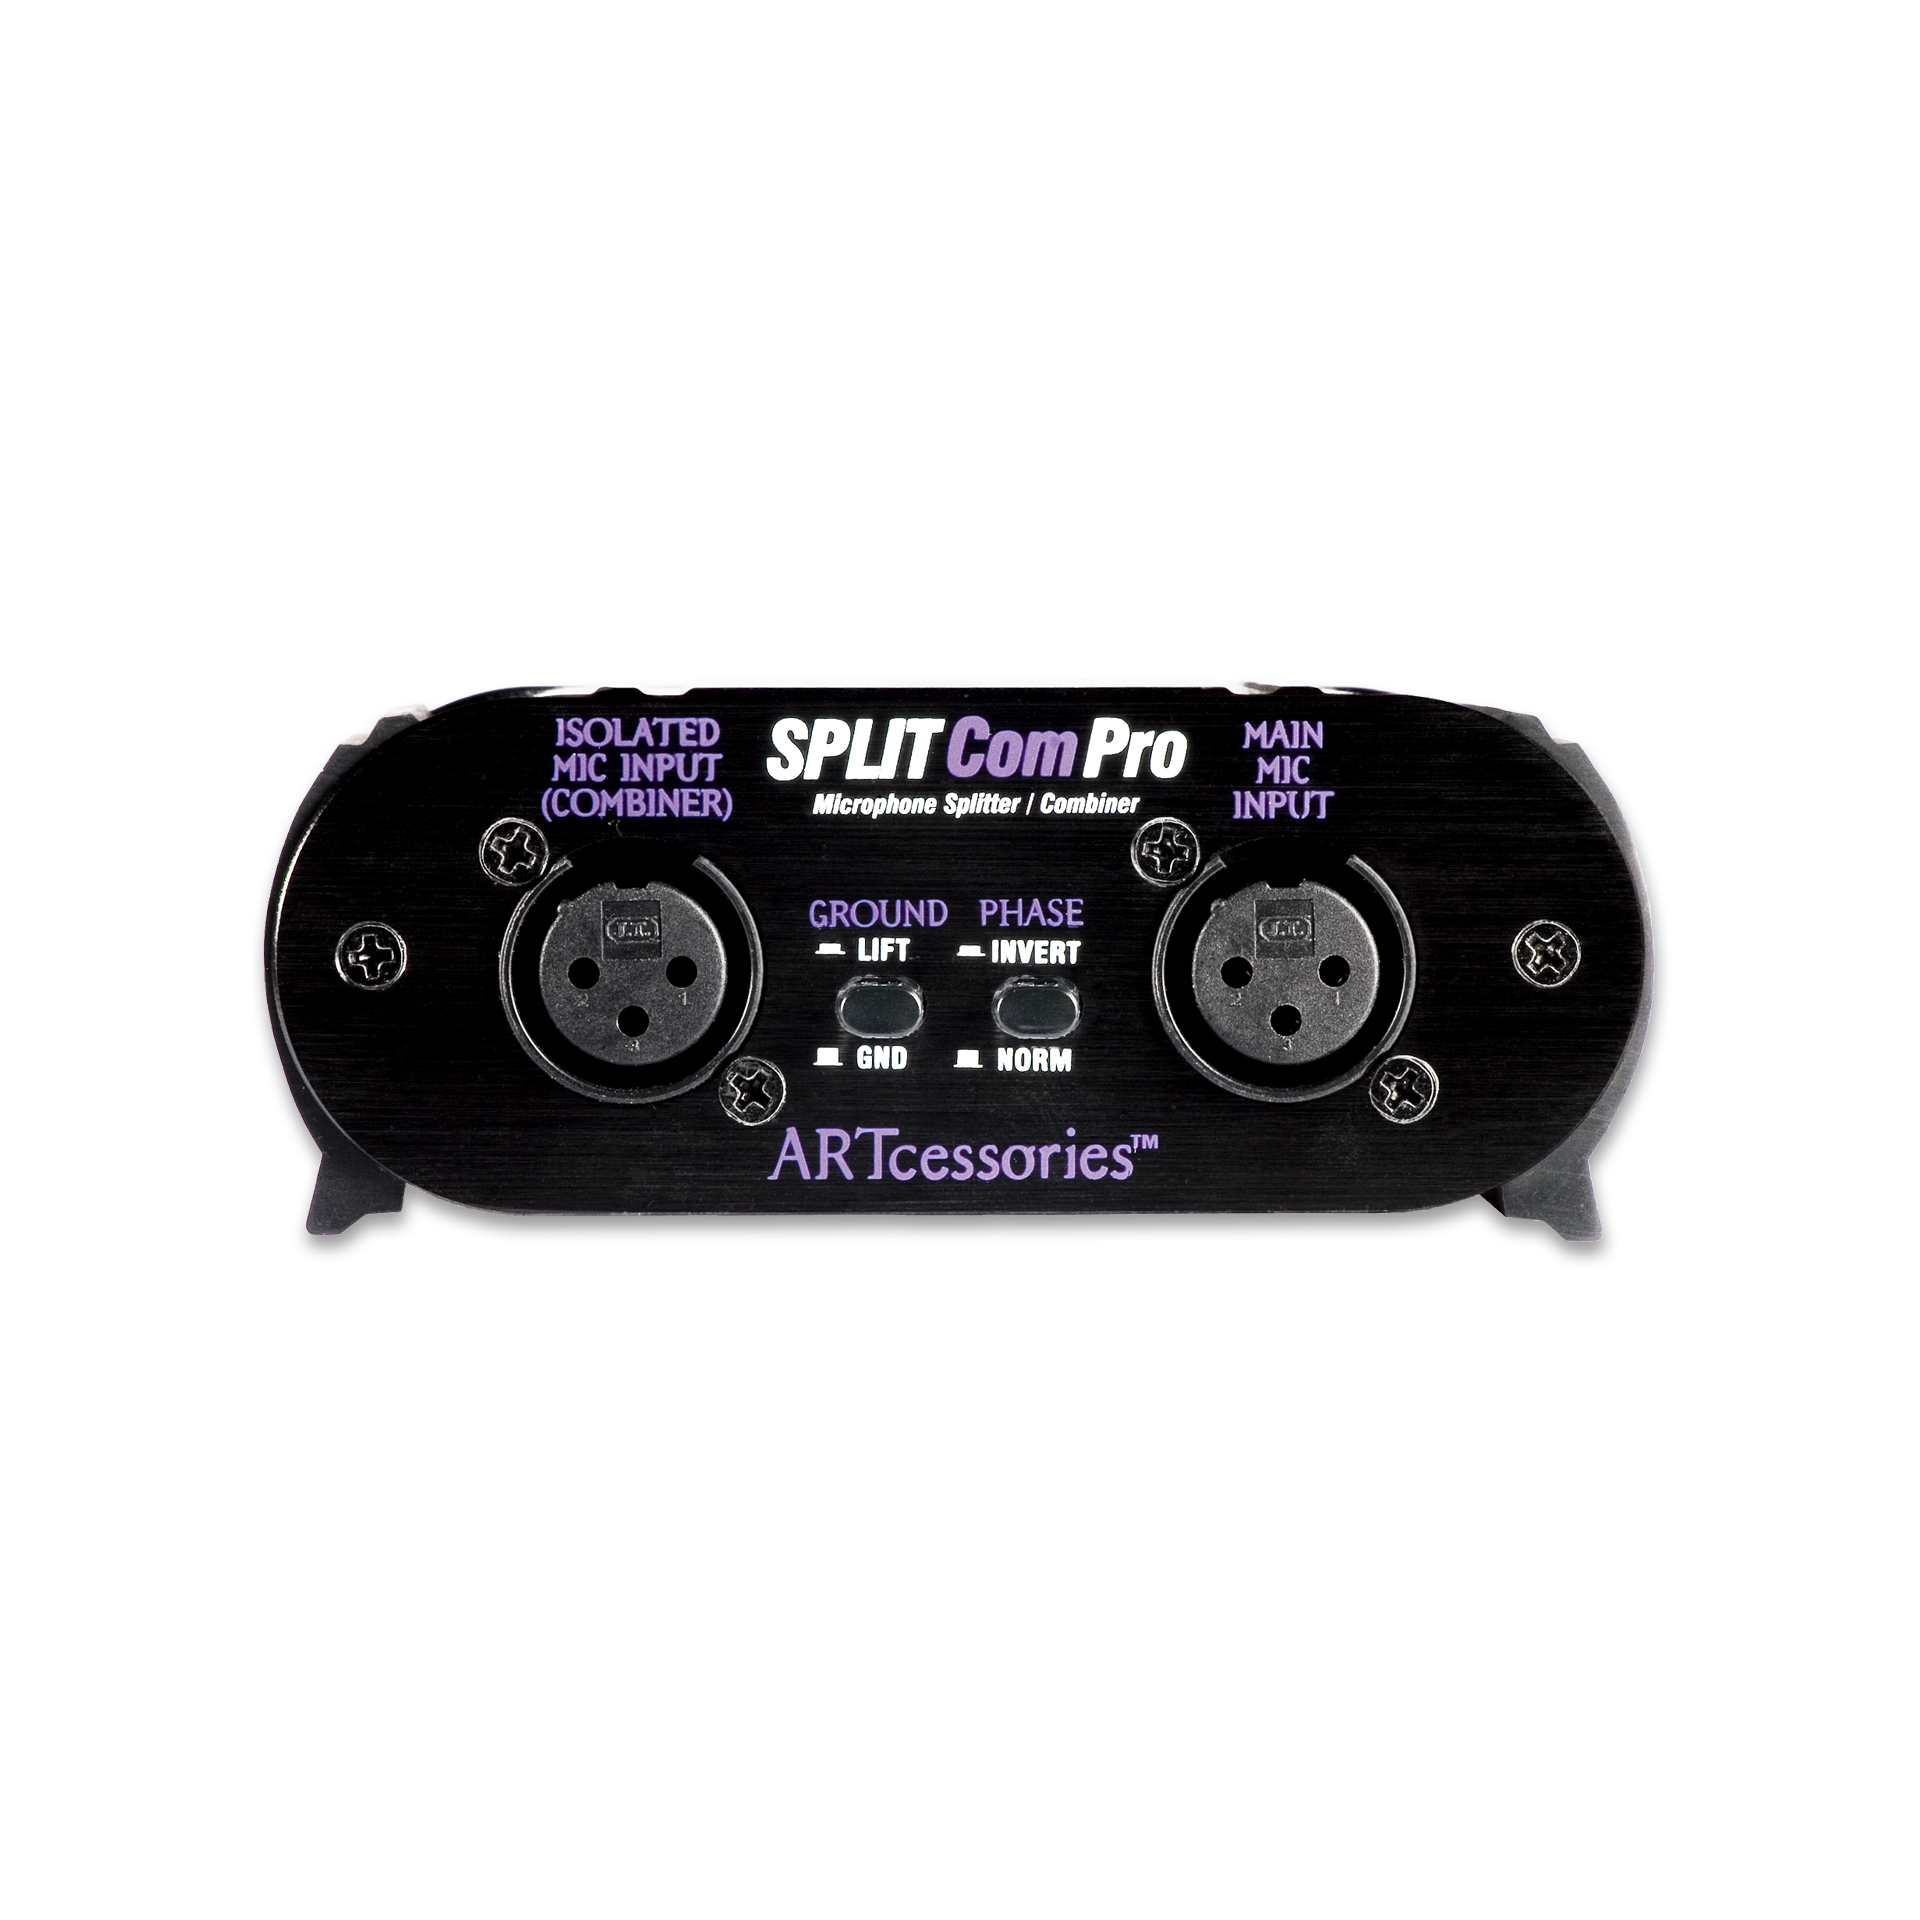 ARTcessories SplitComPro Microphone Splitter/Combiner